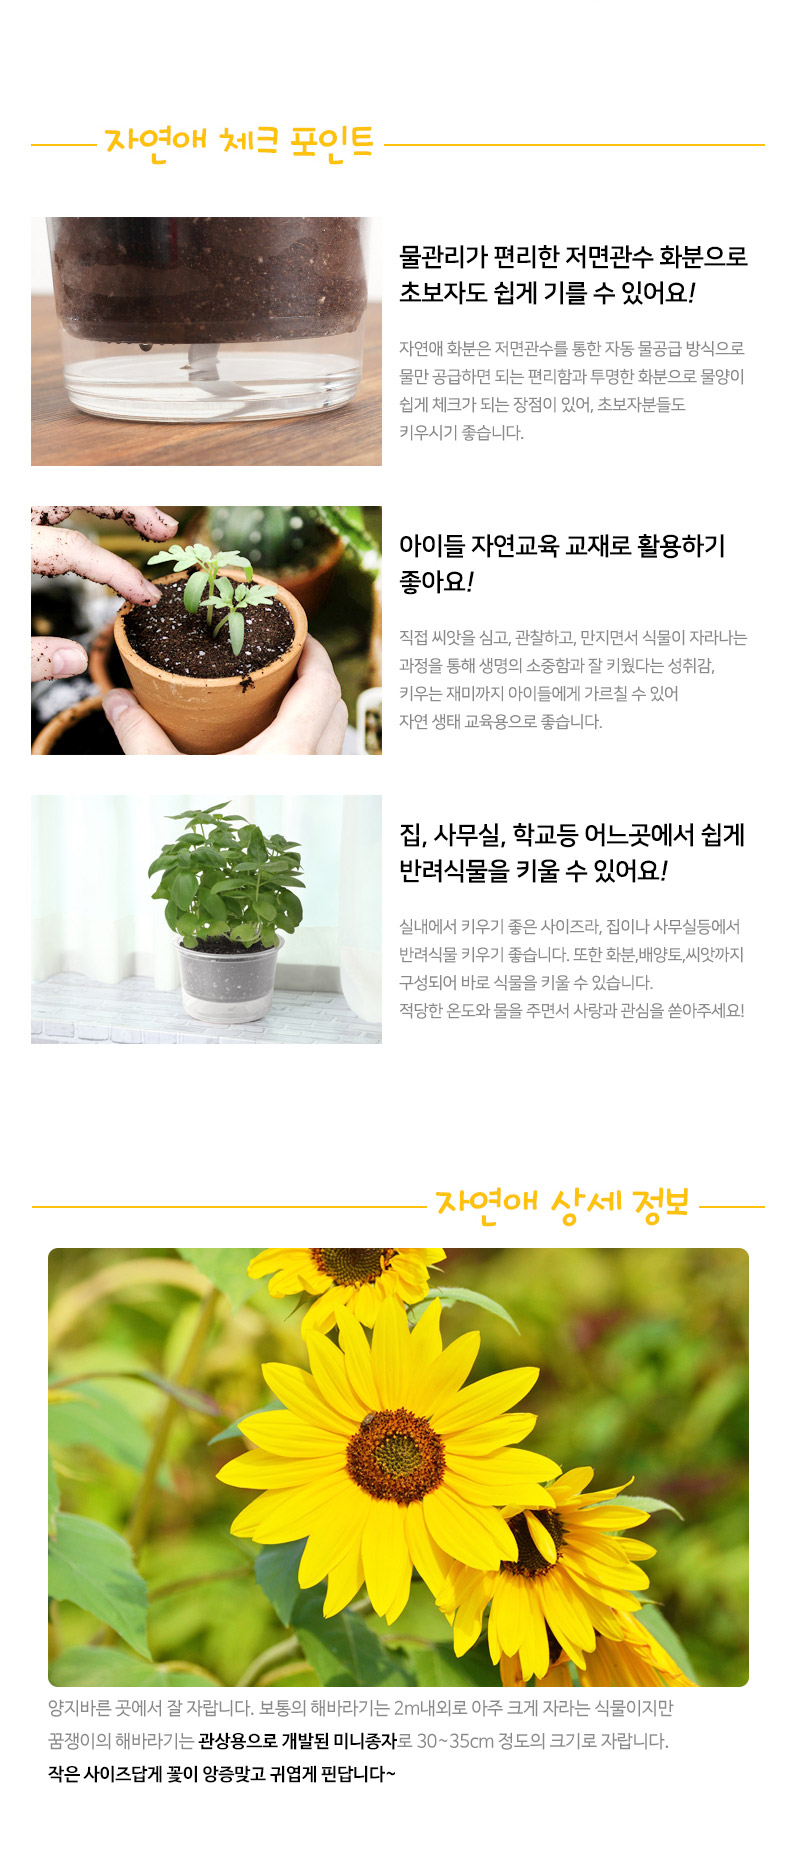 mygarden_sunflower_02.jpg